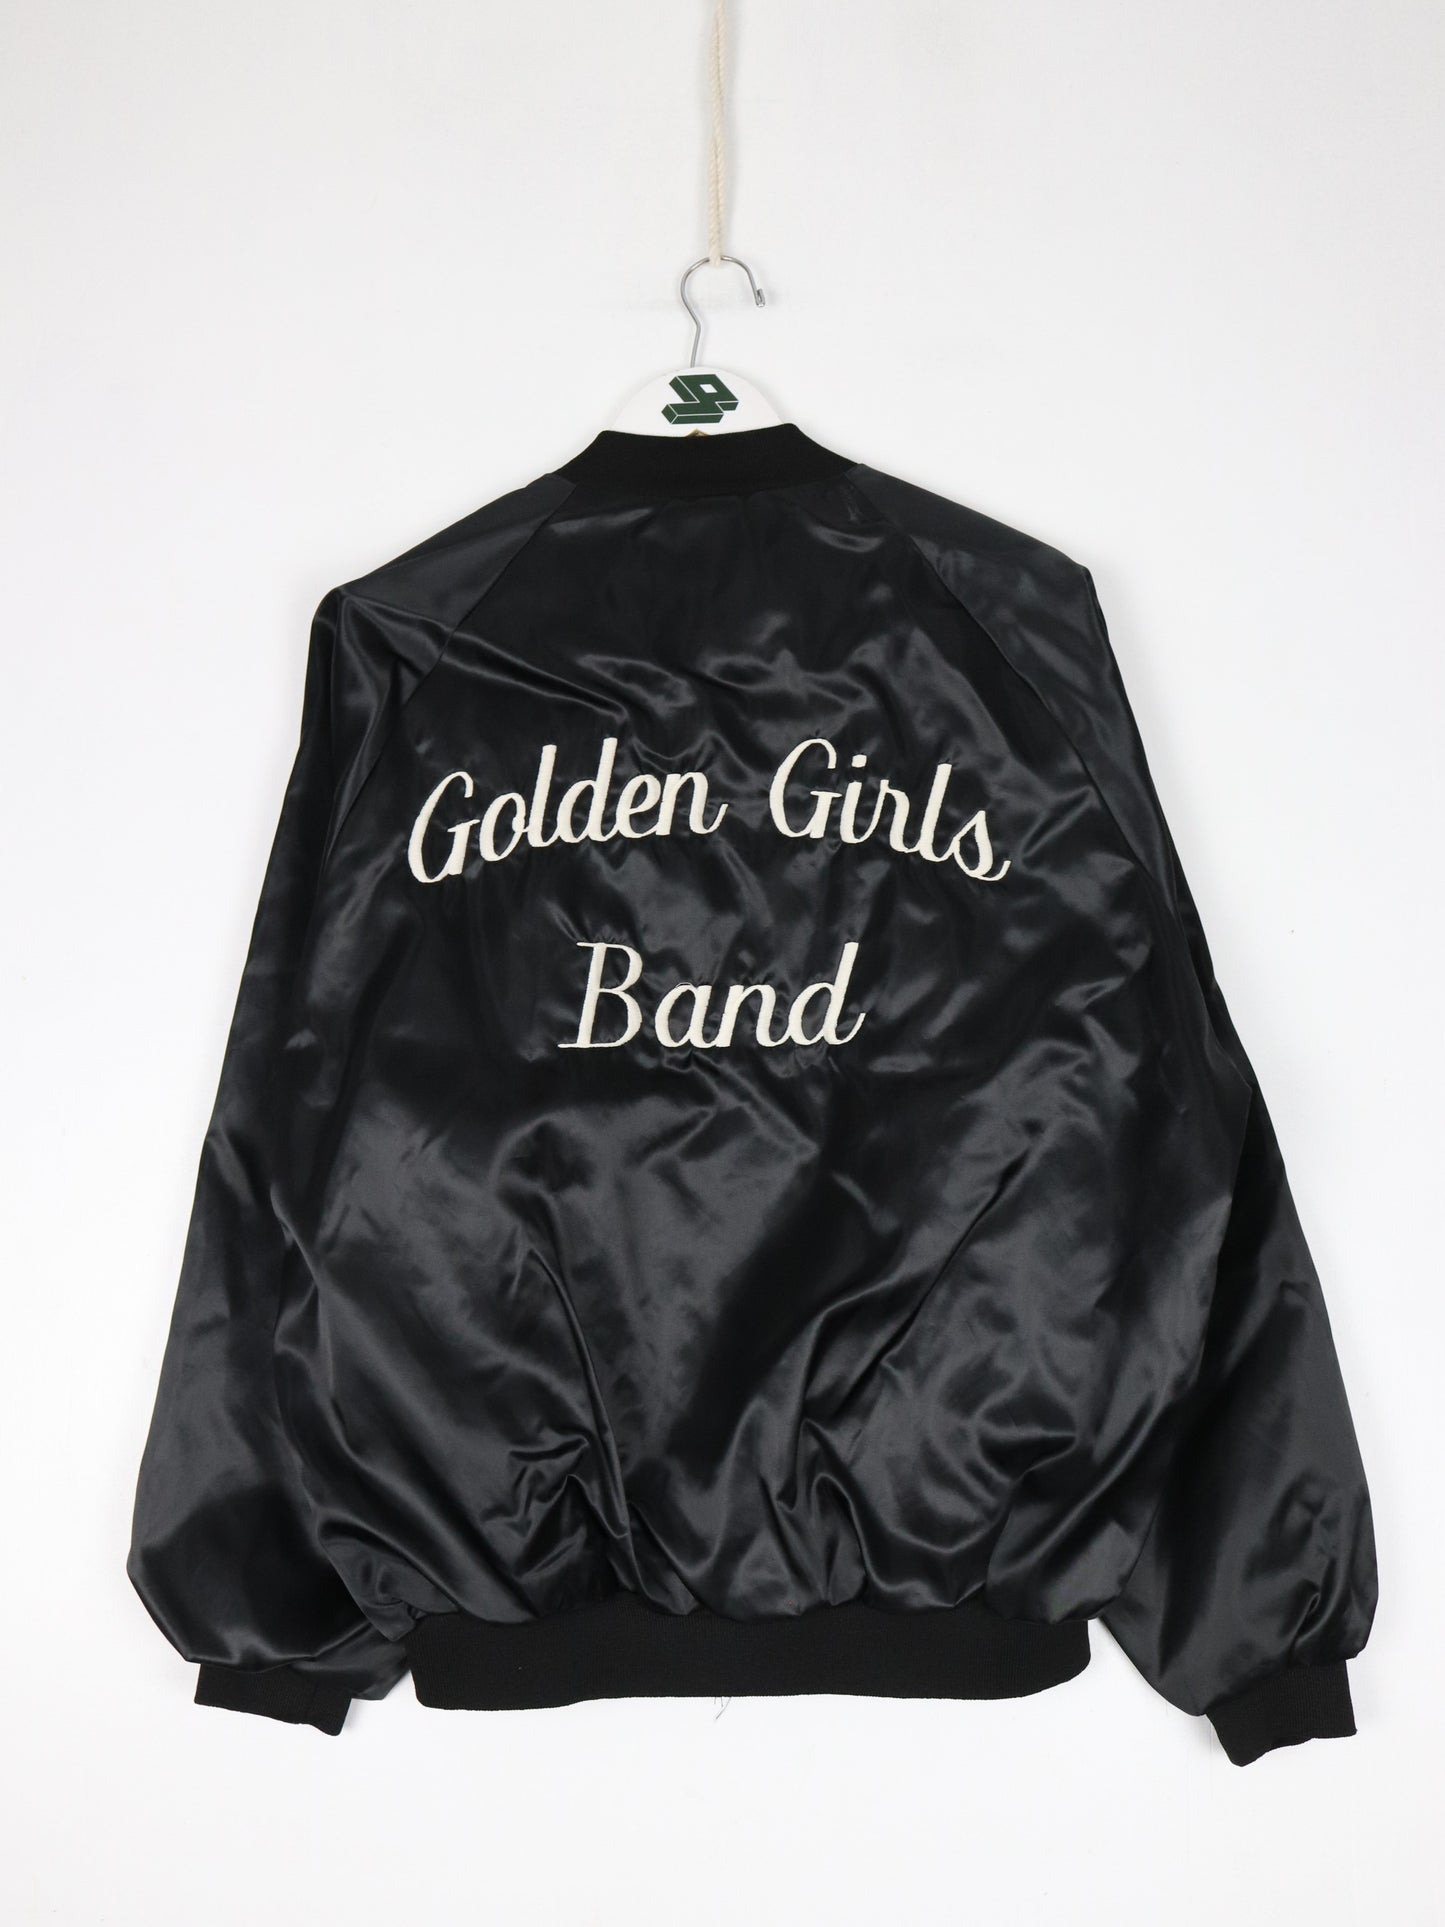 Vintage Golden Girls Band Jacket Mens Large Black Satin Bomber